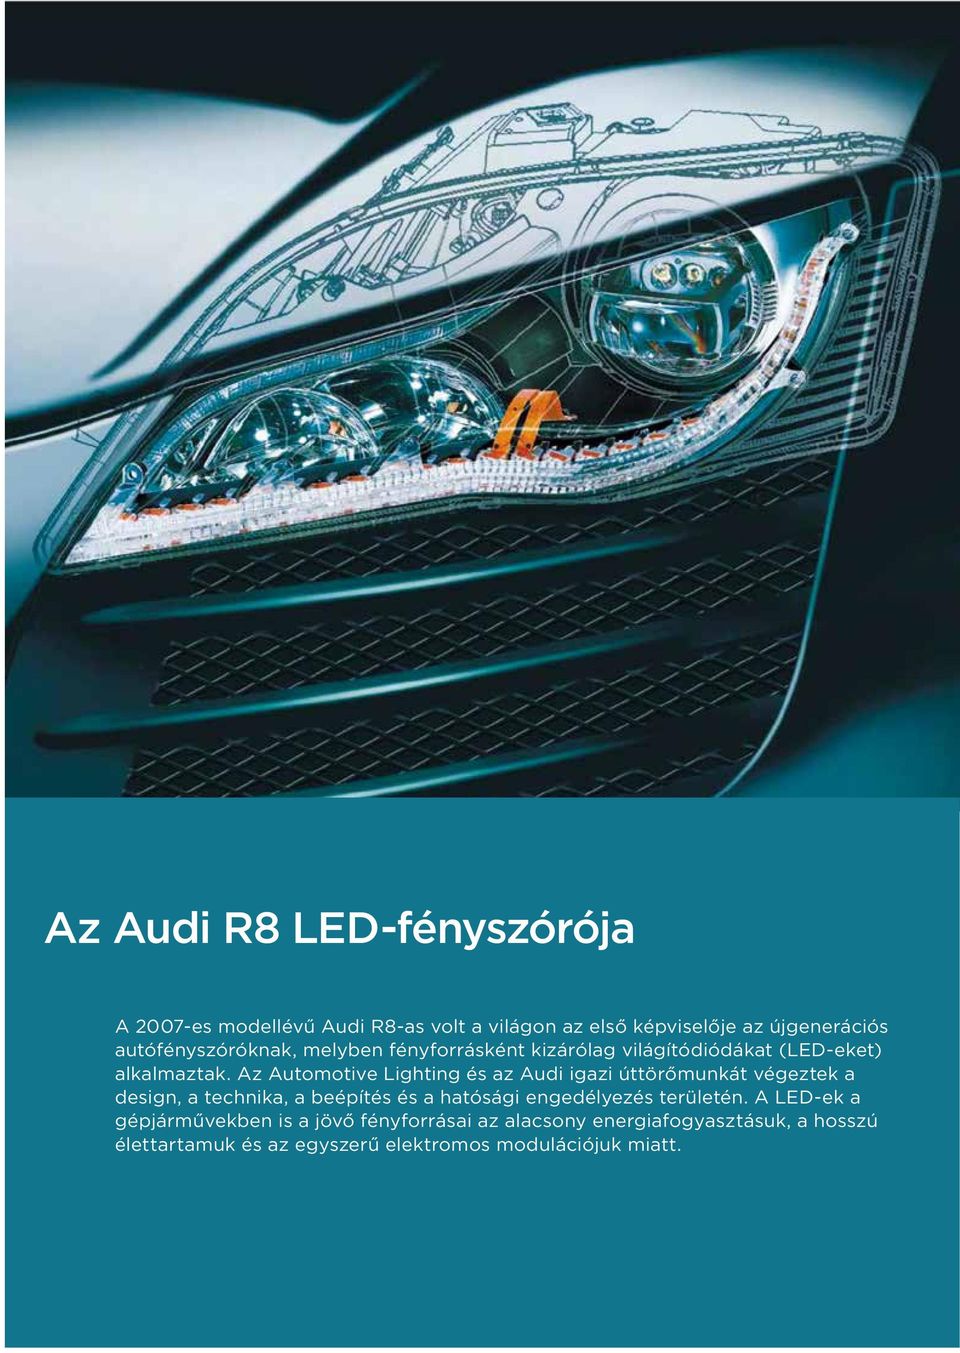 Az Automotive Lighting és az Audi igazi úttörőmunkát végeztek a design, a technika, a beépítés és a hatósági engedélyezés